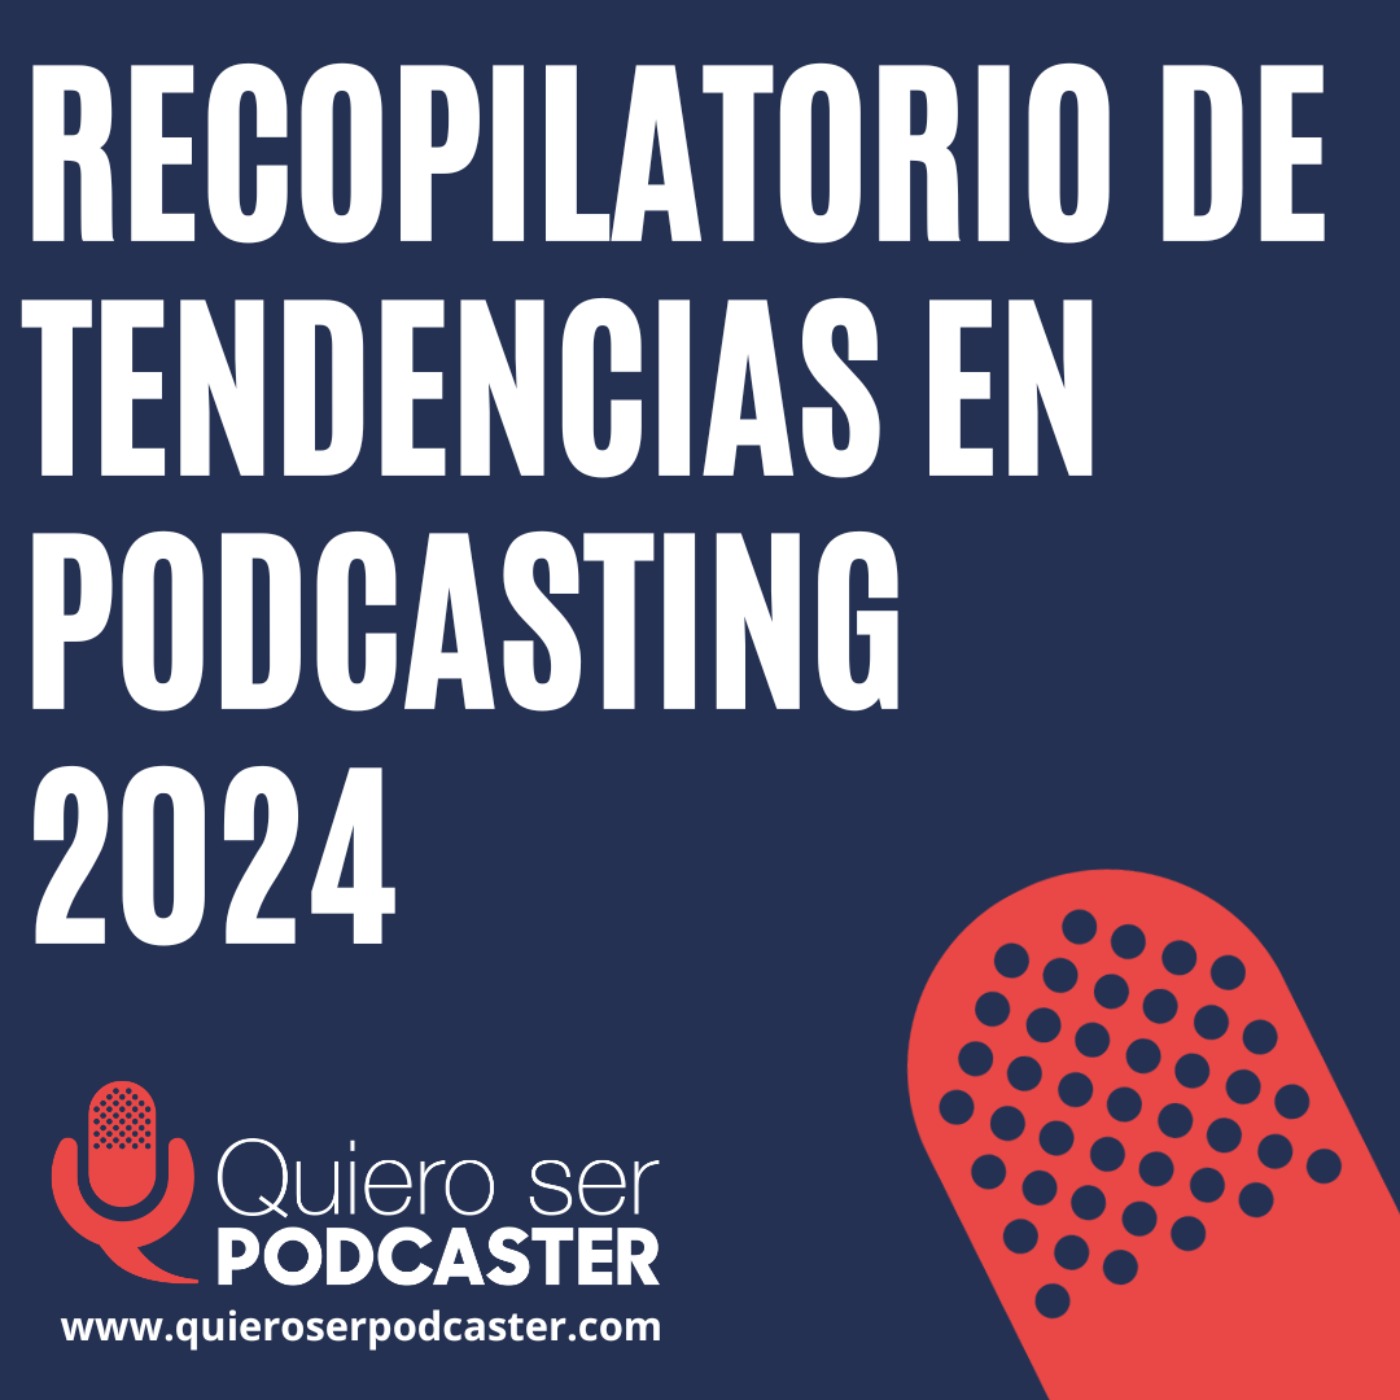 Recopilatorio de tendencias en podcasting 2024  cc @jagelado @luismipedrero @acast